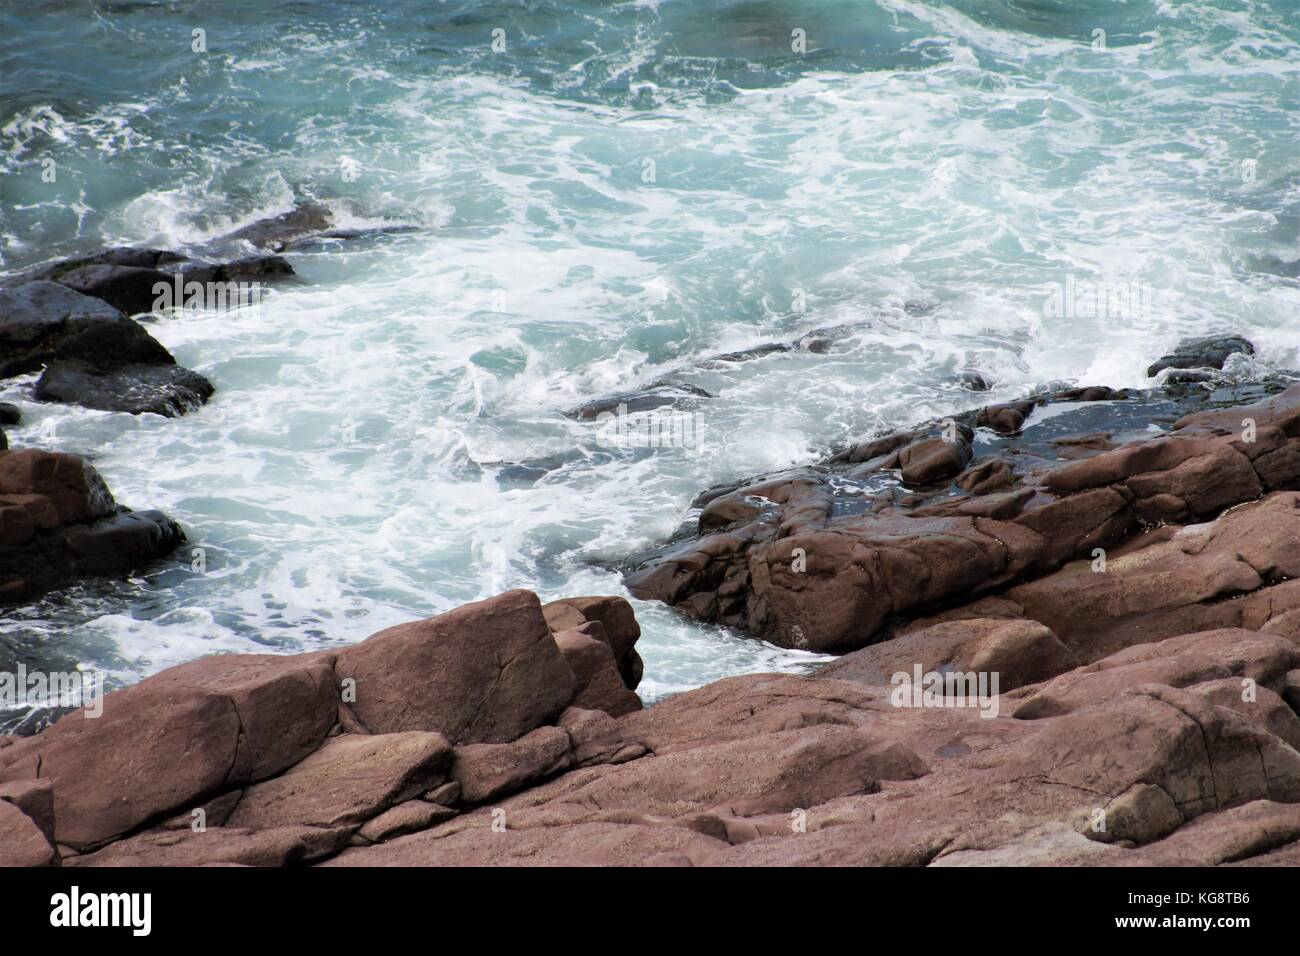 Las olas rompiendo contra las rocas, Cabo Spear, Terranova. Un litoral accidentado, agua blanca. Foto de stock